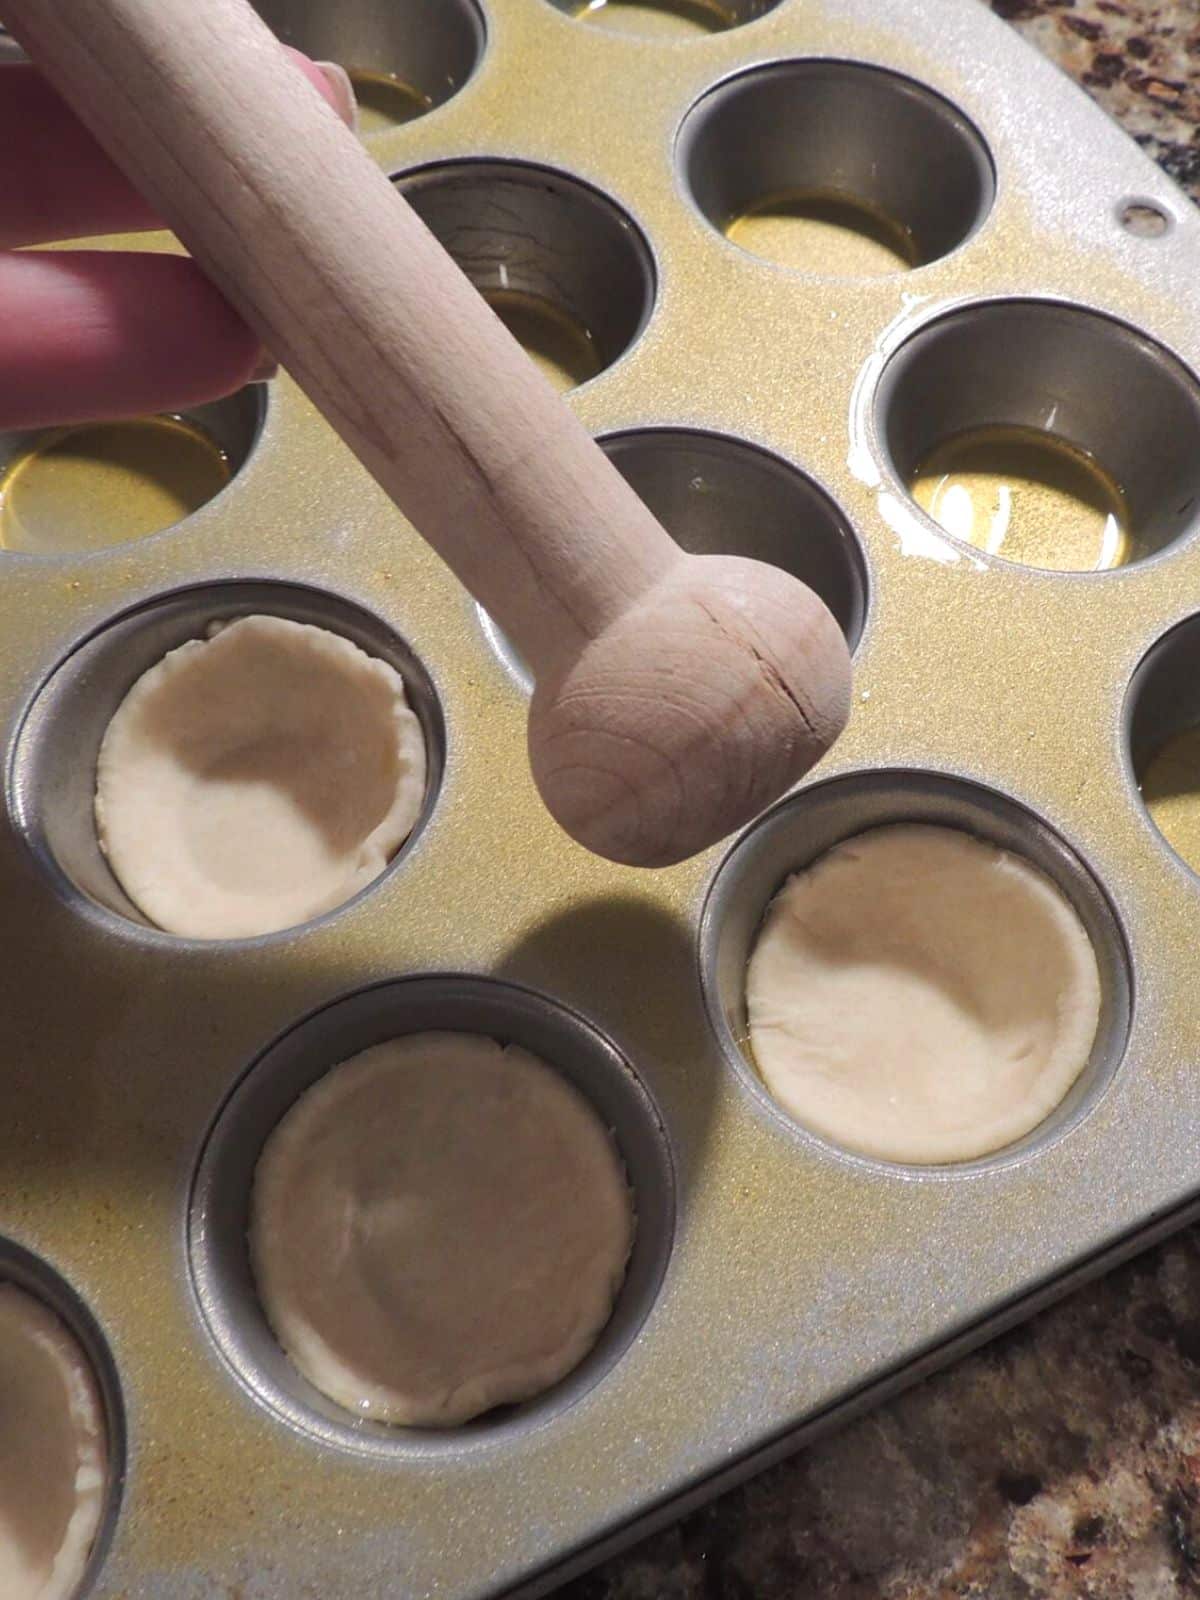 Place cut out pie crust dough in mini muffin pan.